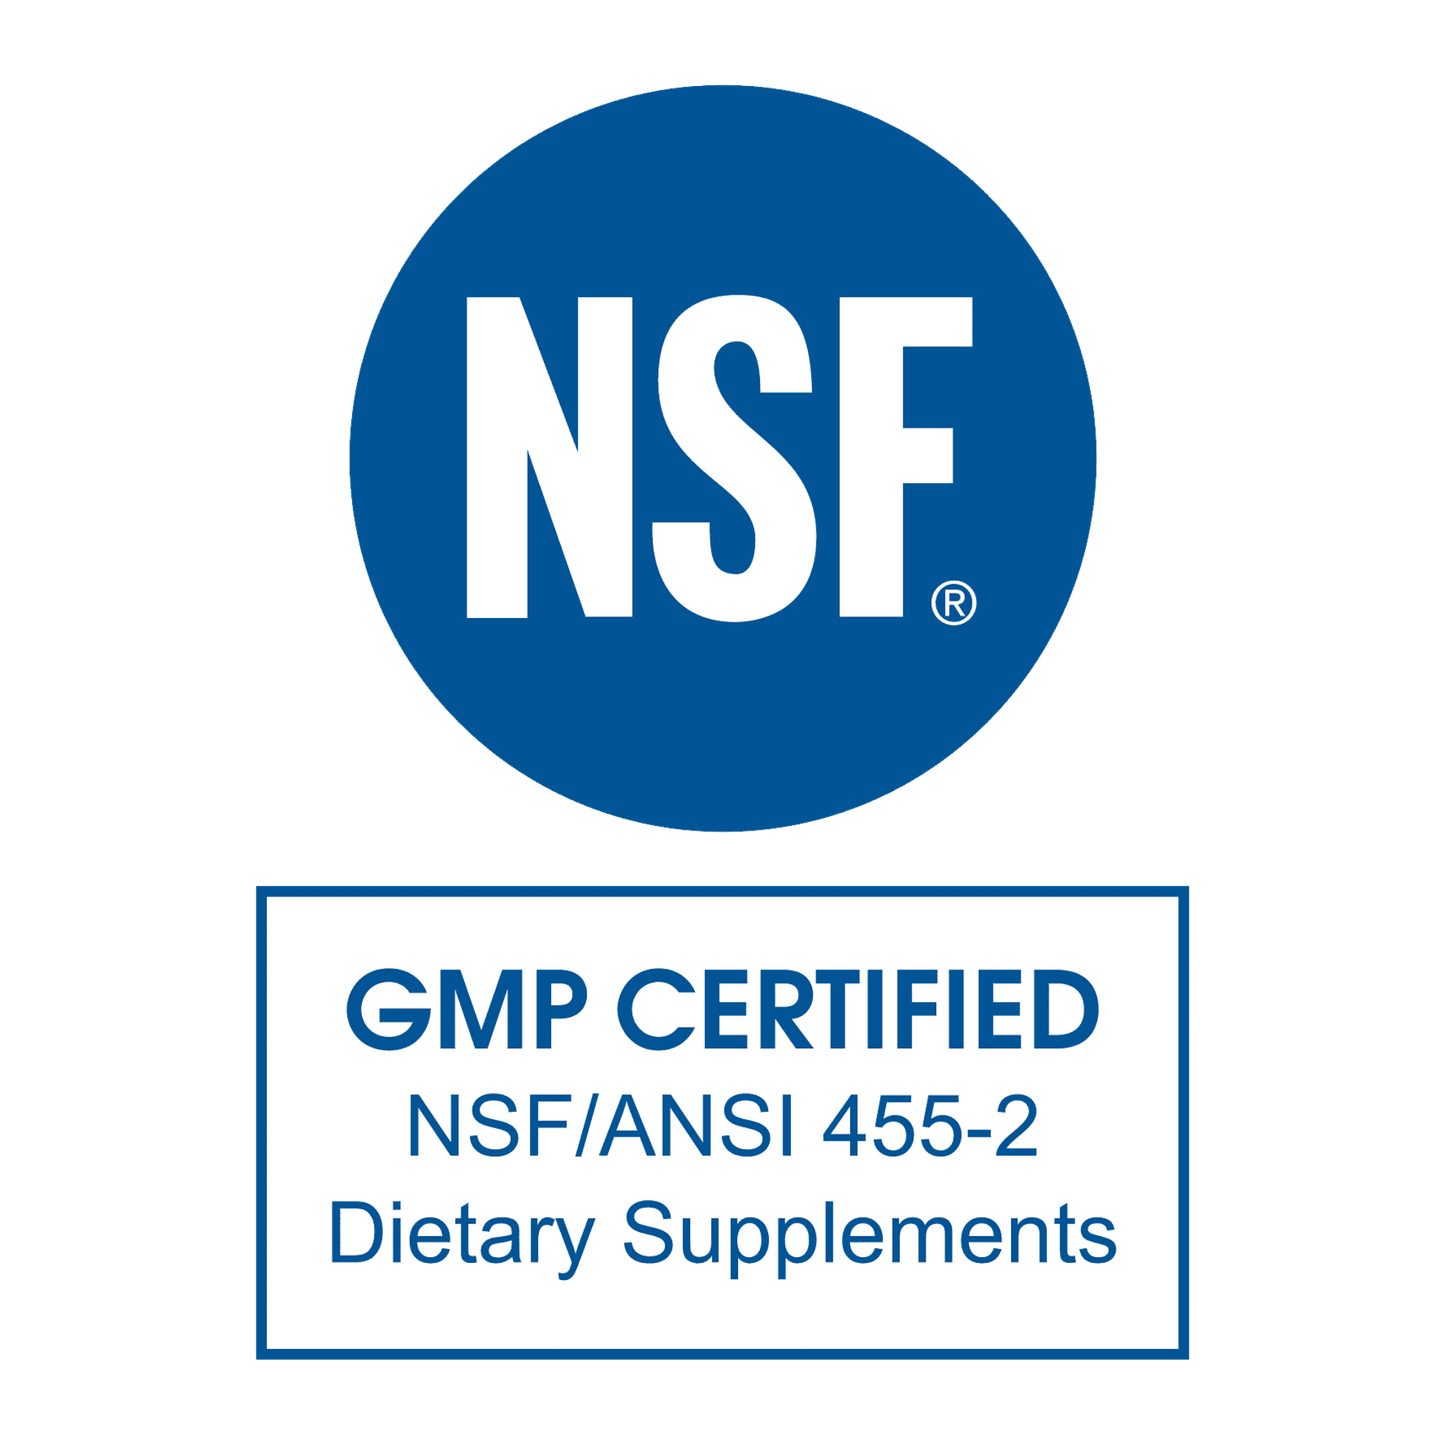 NSF_GMP_Certified_4e0406b1-5c1d-44db-8174-11328f55cbf8 - CON-CRET Patented Creatine HCl